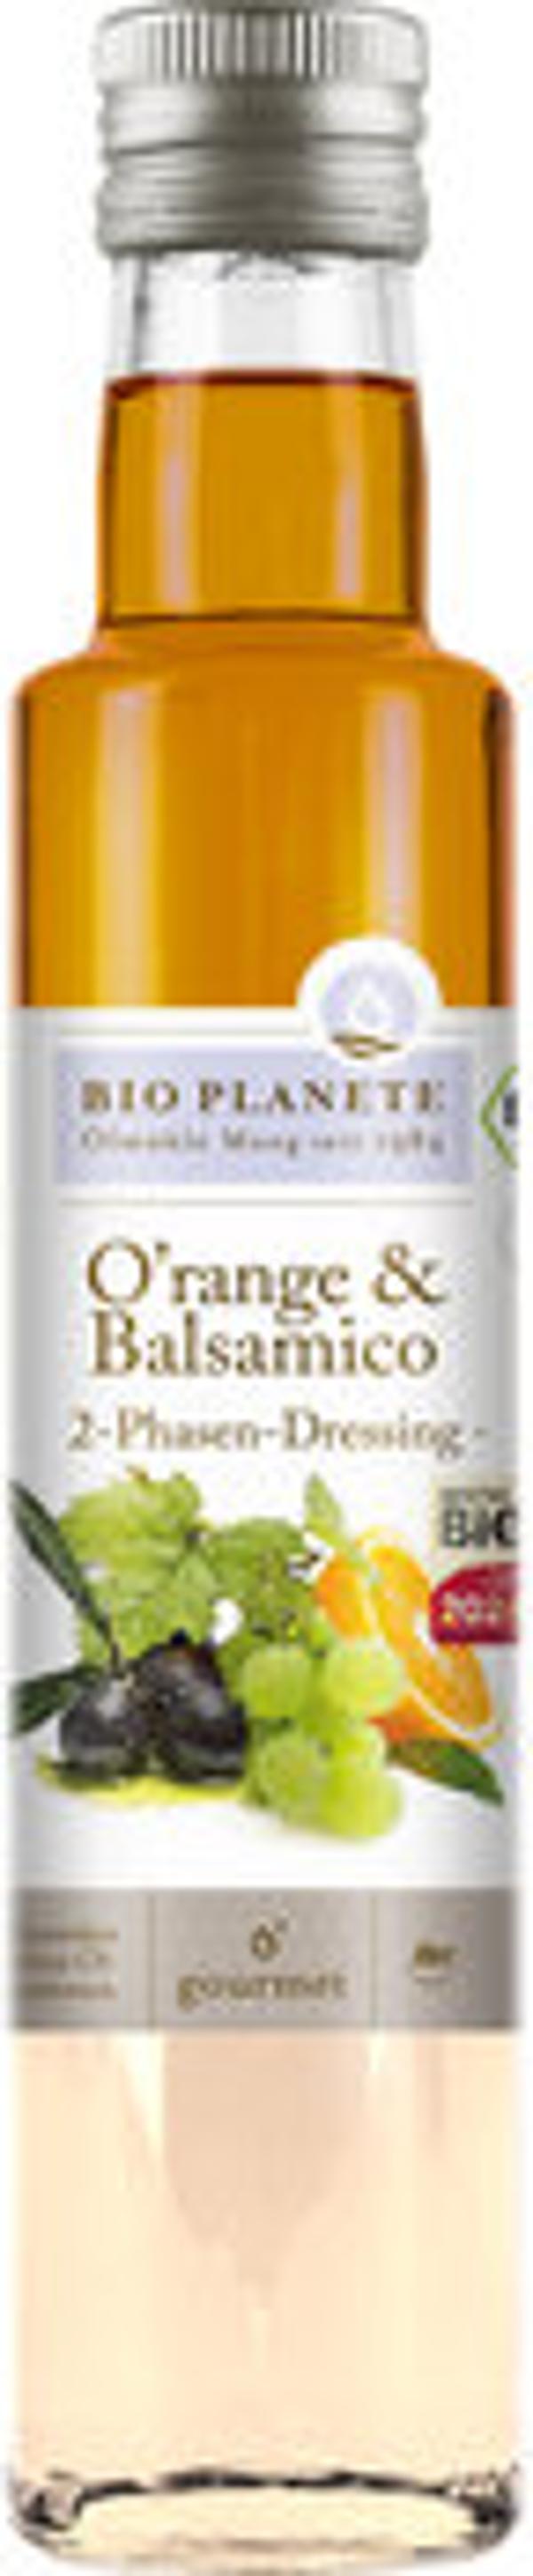 Produktfoto zu O'range und Balsamico Essig, 250 ml